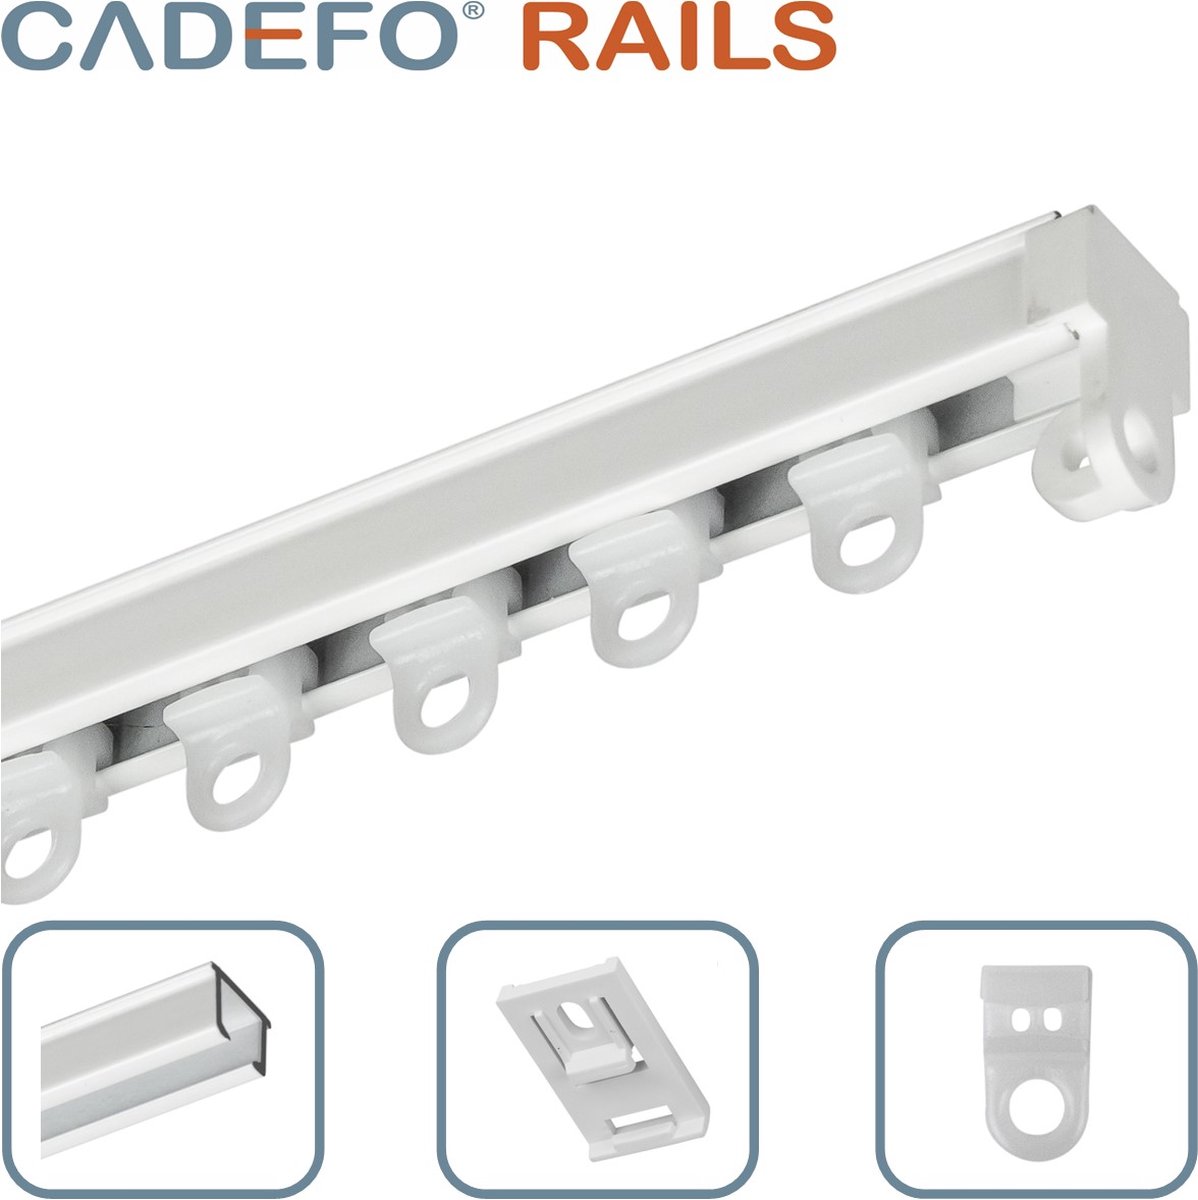 CADEFO RAILS (351 - 400 cm) Gordijnrails - Compleet op maat! - UIT 1 STUK - Leverbaar tot 6 meter - Plafondbevestiging - Lengte 377 cm